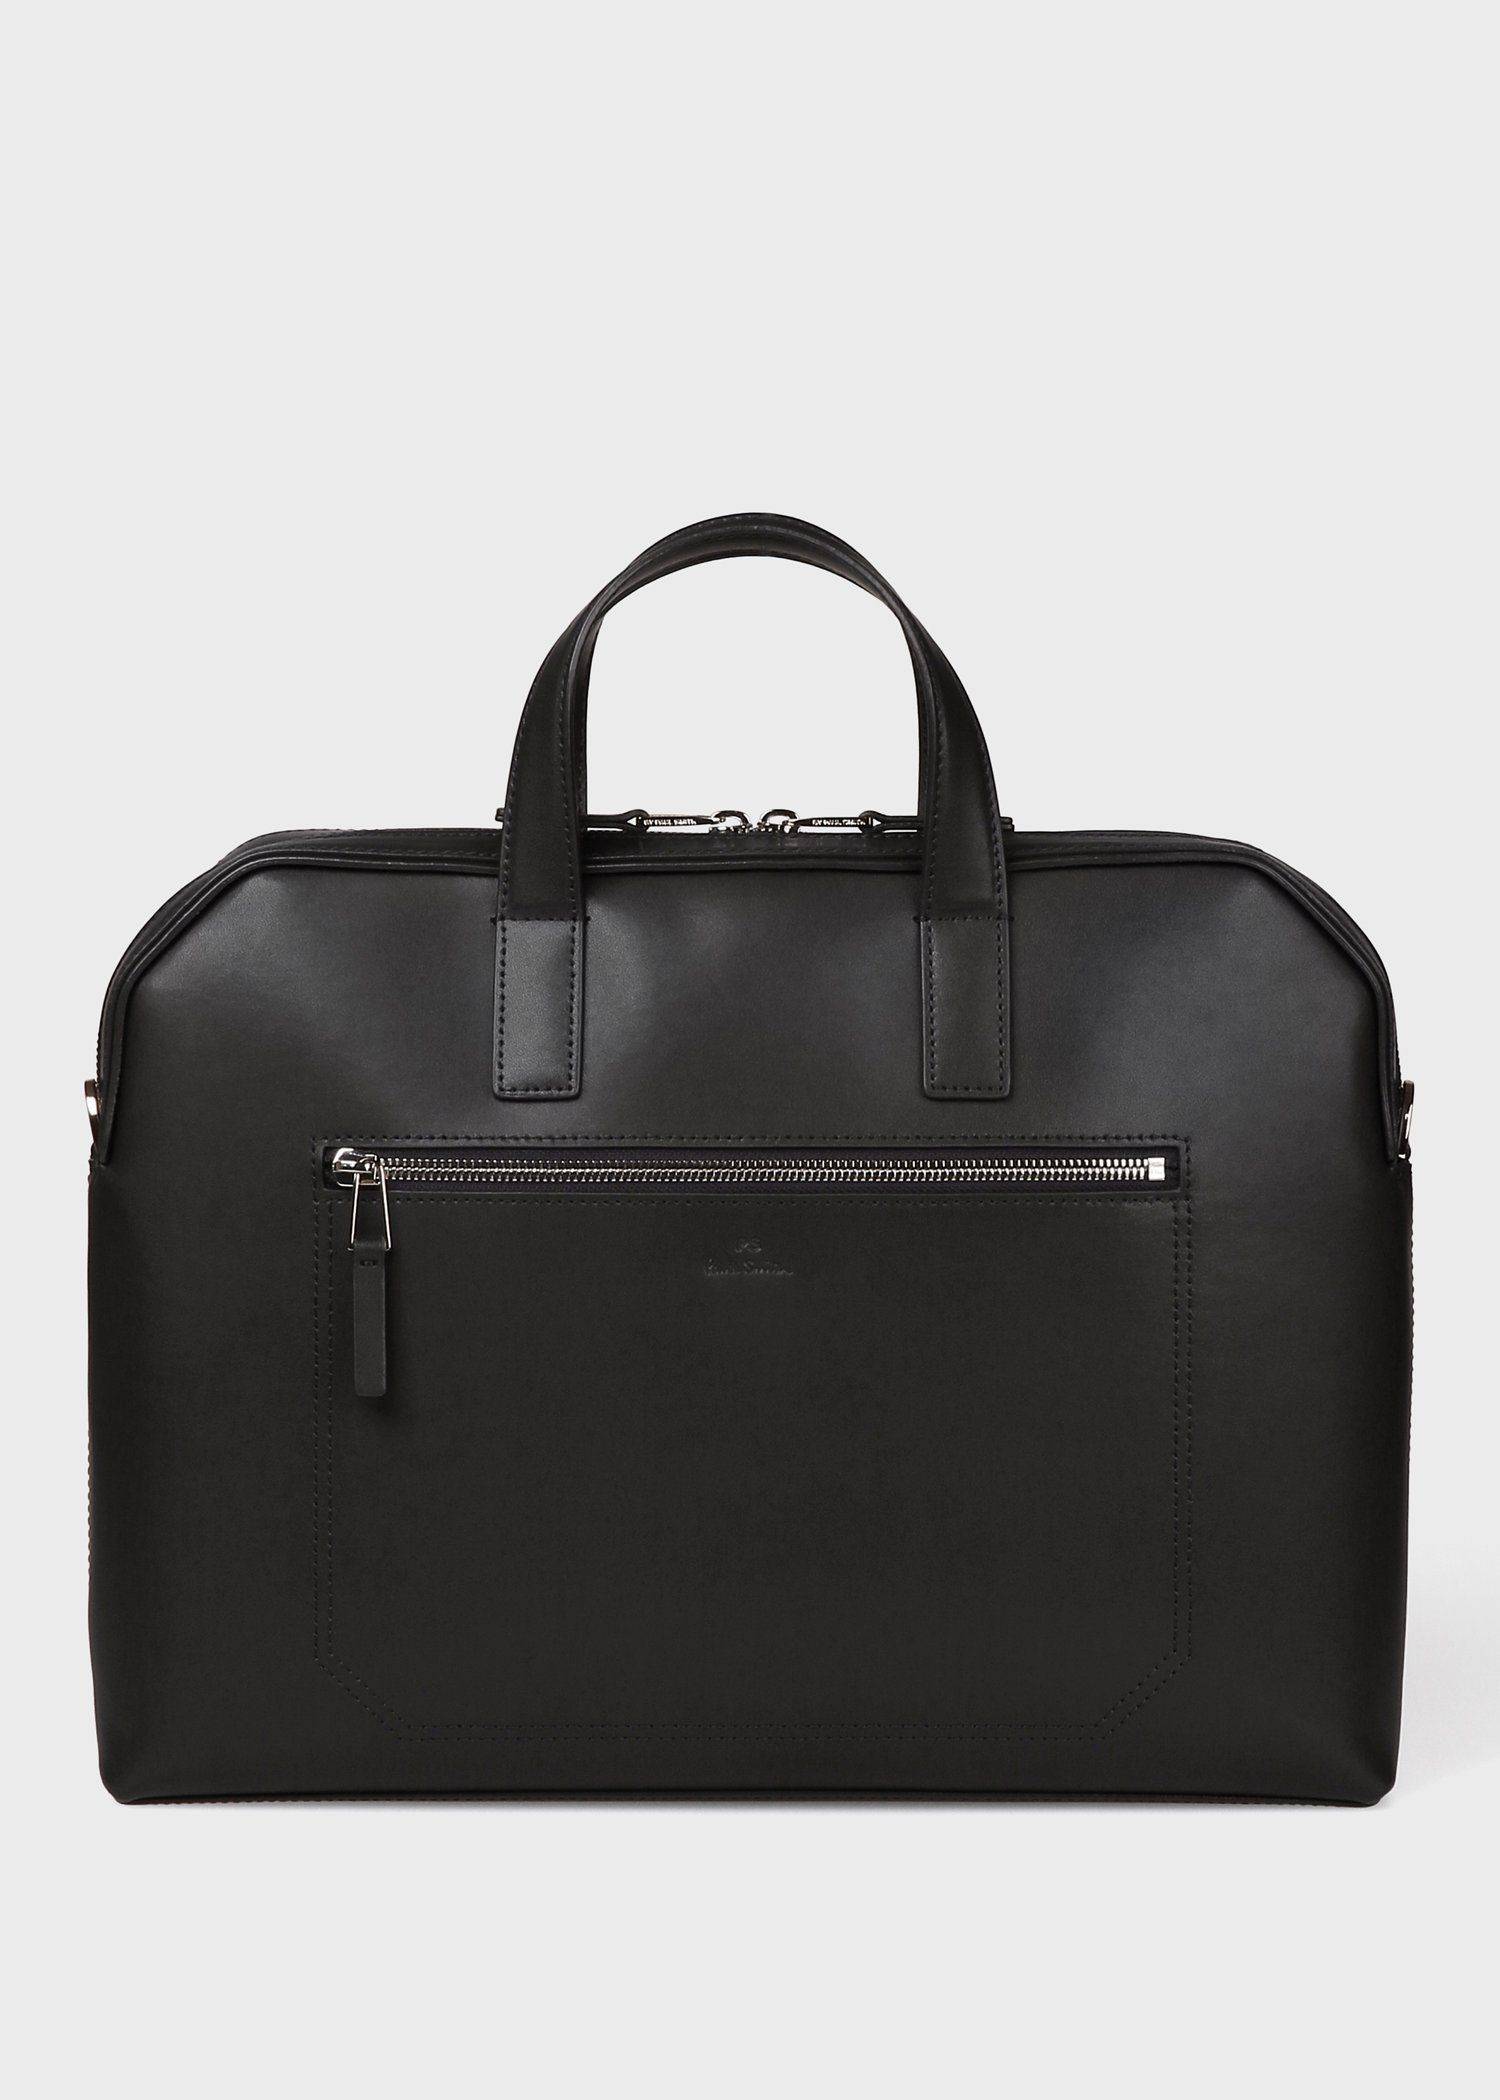 ポールスミス ビジネスバッグ オールレザー 書類鞄 ロゴ刻印 黒